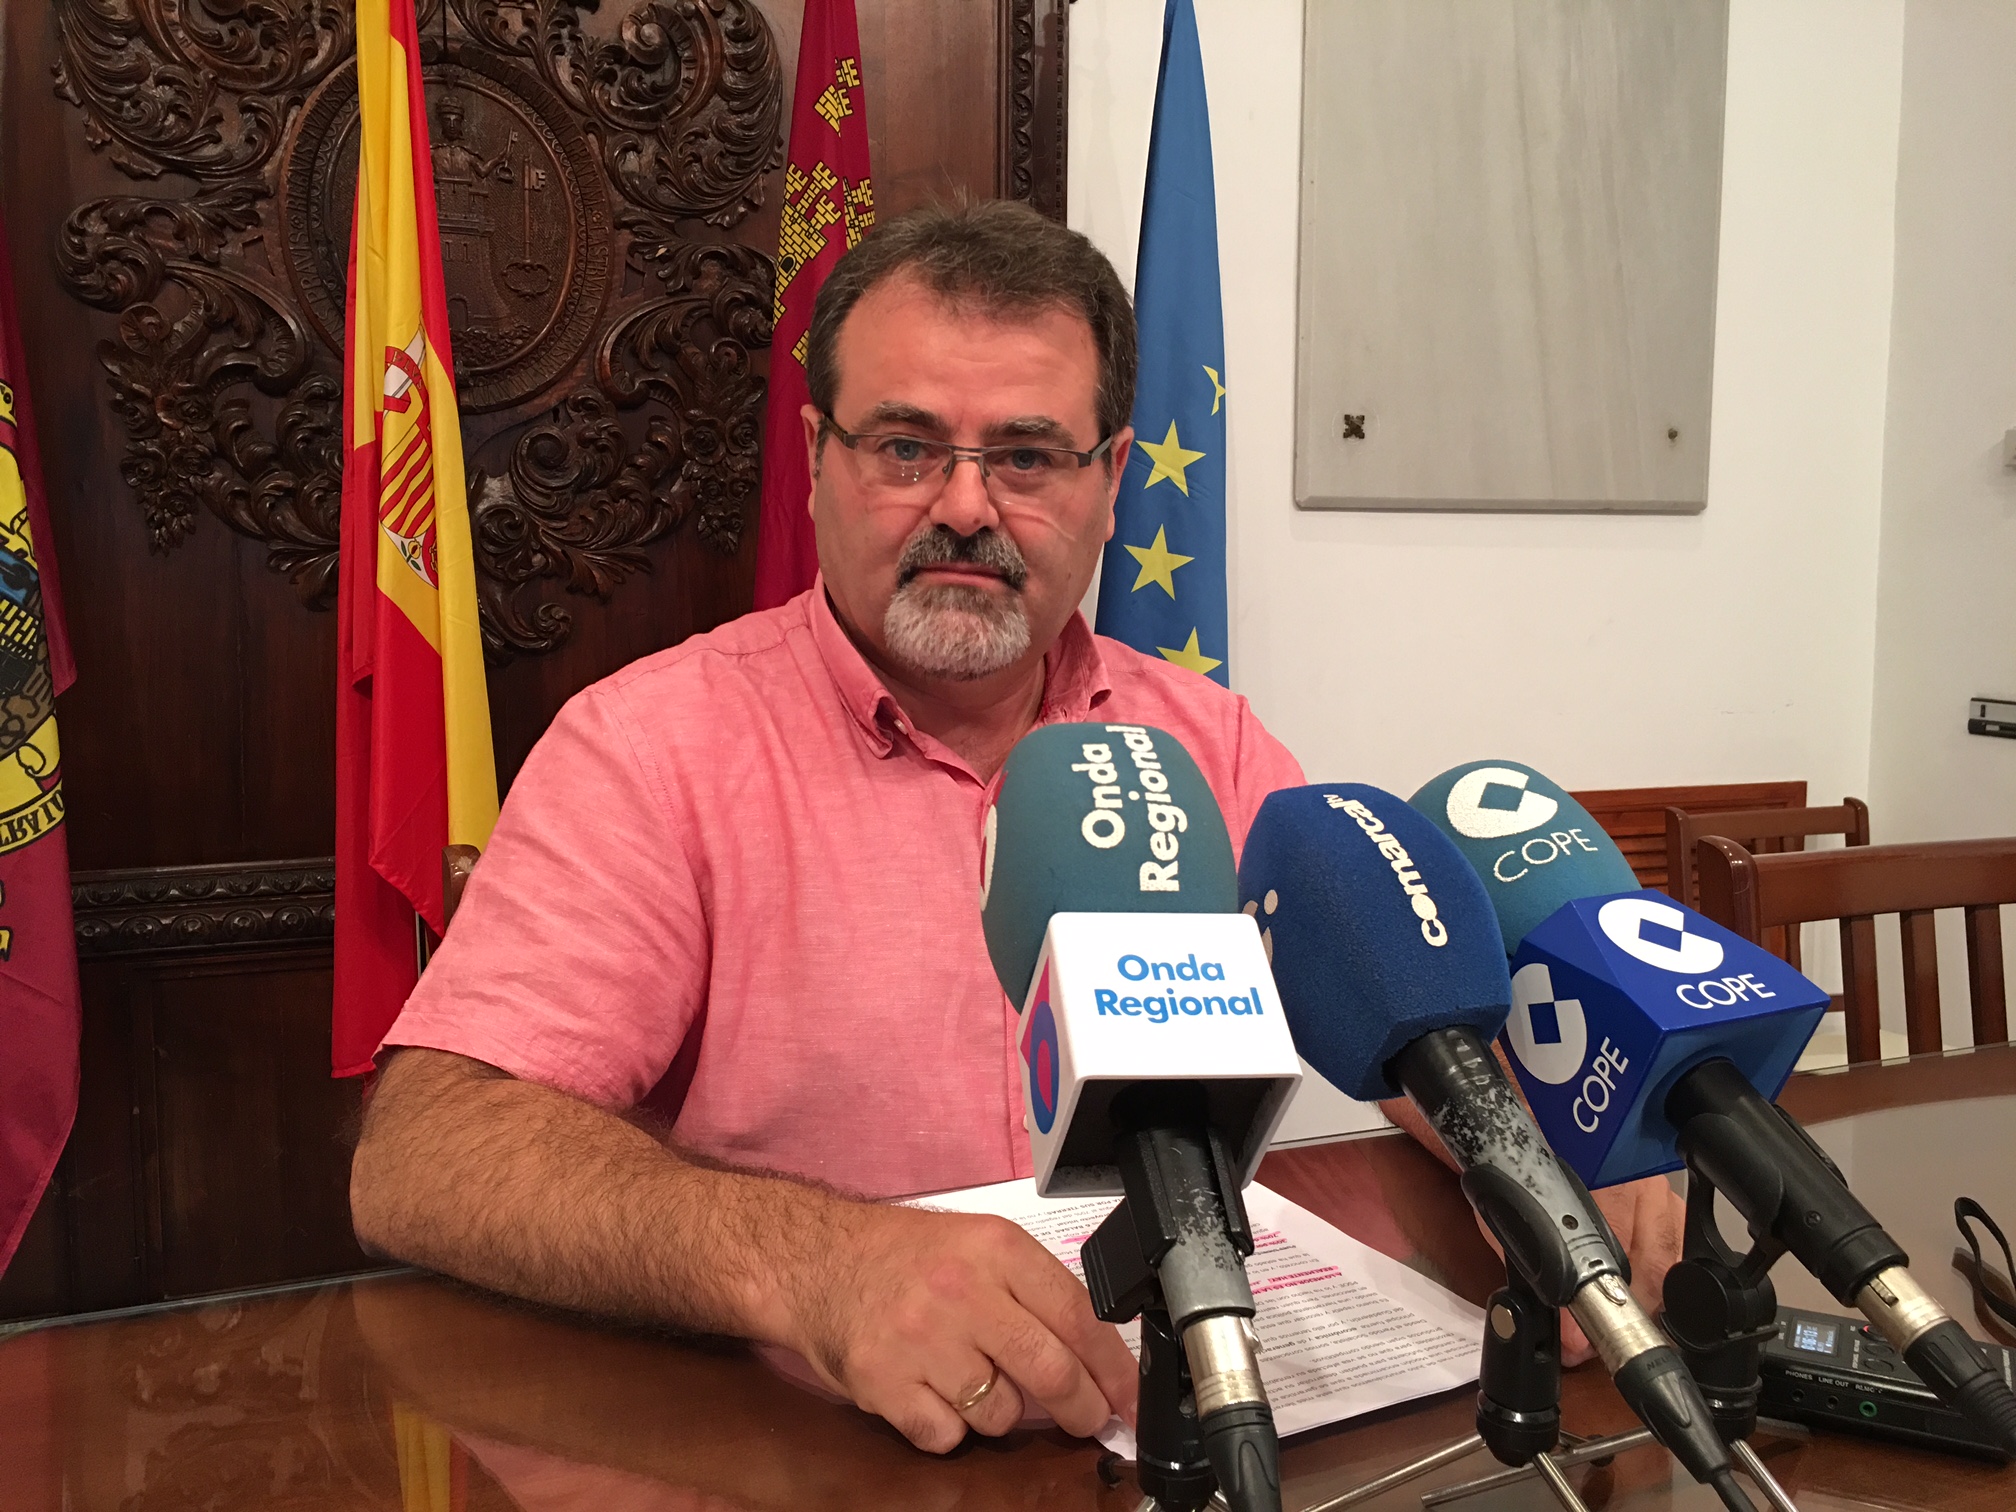 El PSOE califica de “disparate y despropósito” que el PP se empeñe en cobrar a los regantes 1 millón de euros al mes por un agua que “sigue sin llegar”